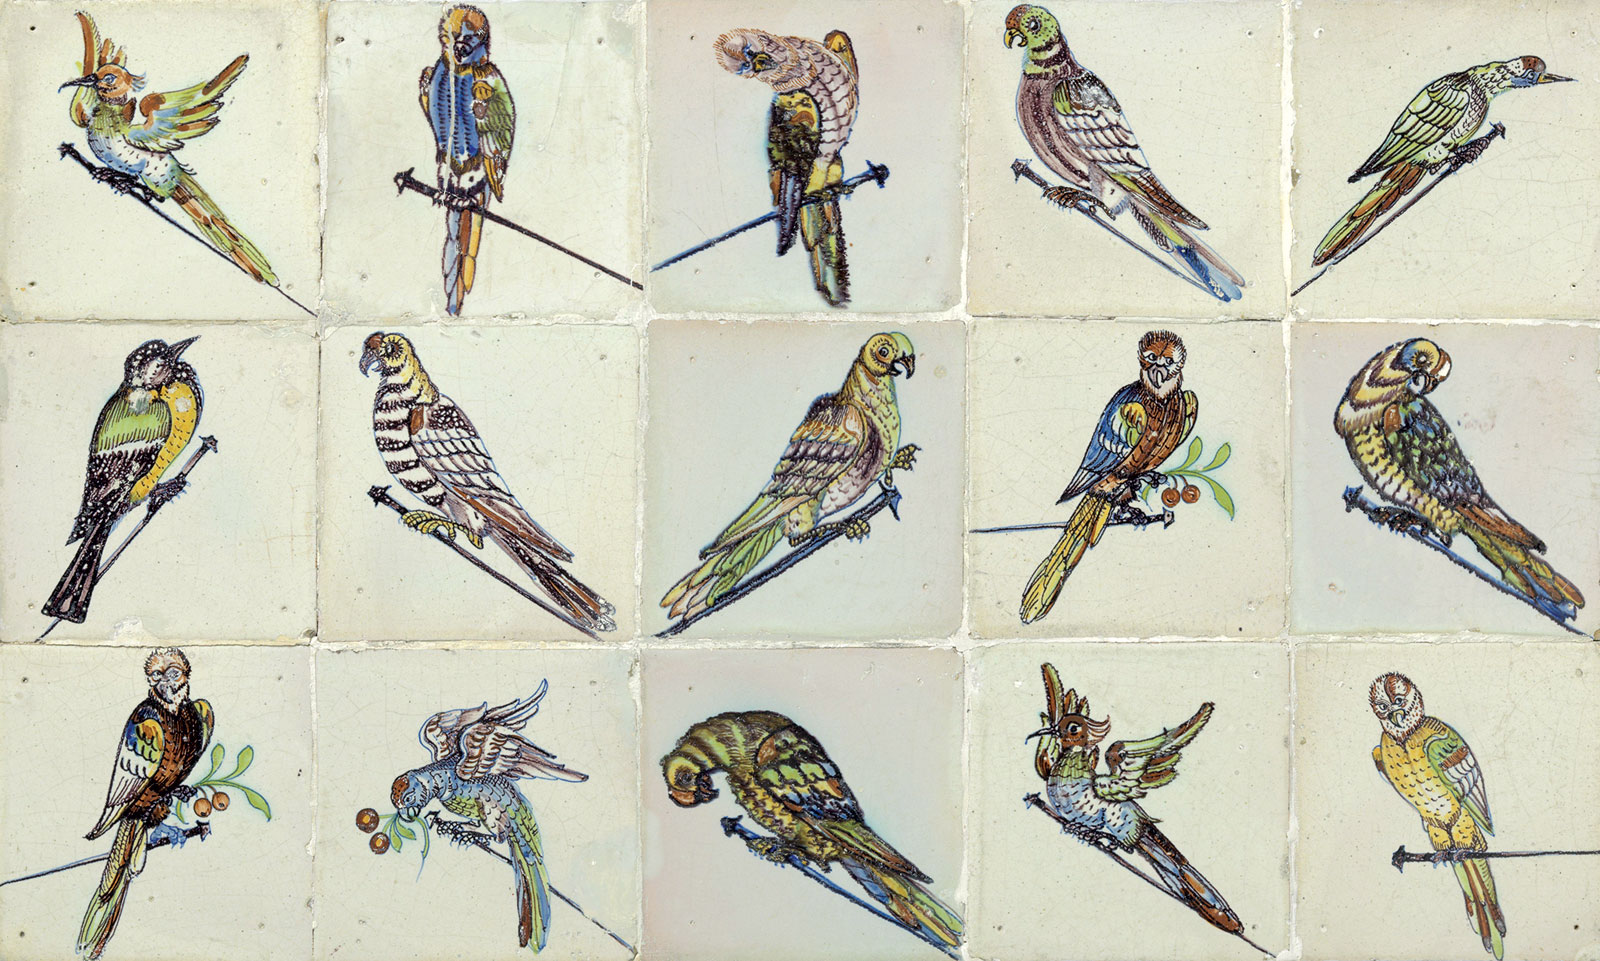 Anónimo, azulejos de pájaros, *ca*. 1640. Rijksmuseum